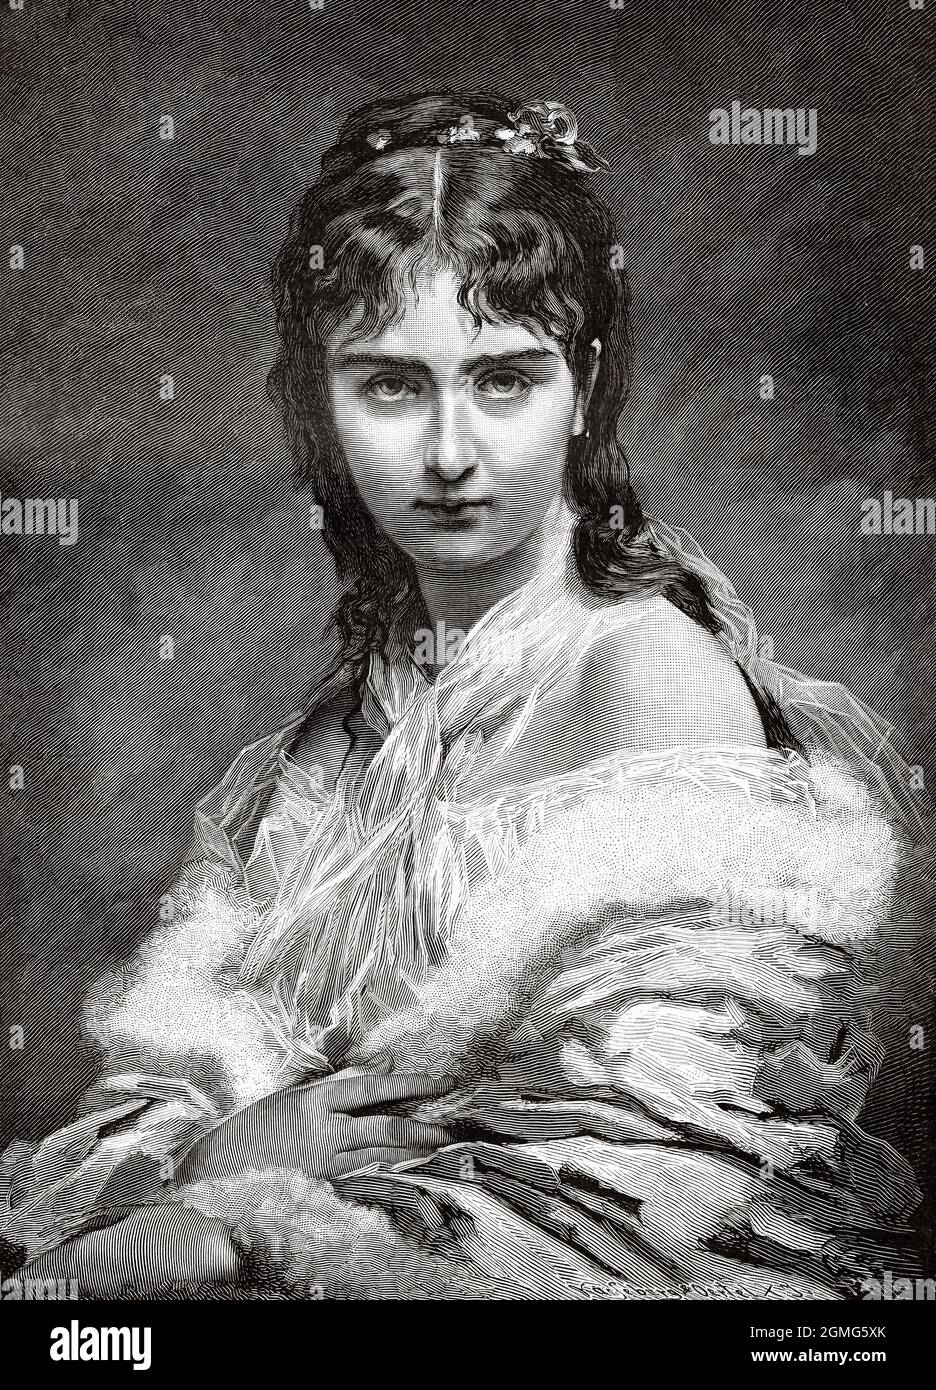 Portrait de la jeune femme, peinture de Charles Joshua Chaplin (1825-1891) est un peintre et graveur universitaire français. Ancienne illustration gravée du XIXe siècle de la Ilustración Artística 1882 Banque D'Images